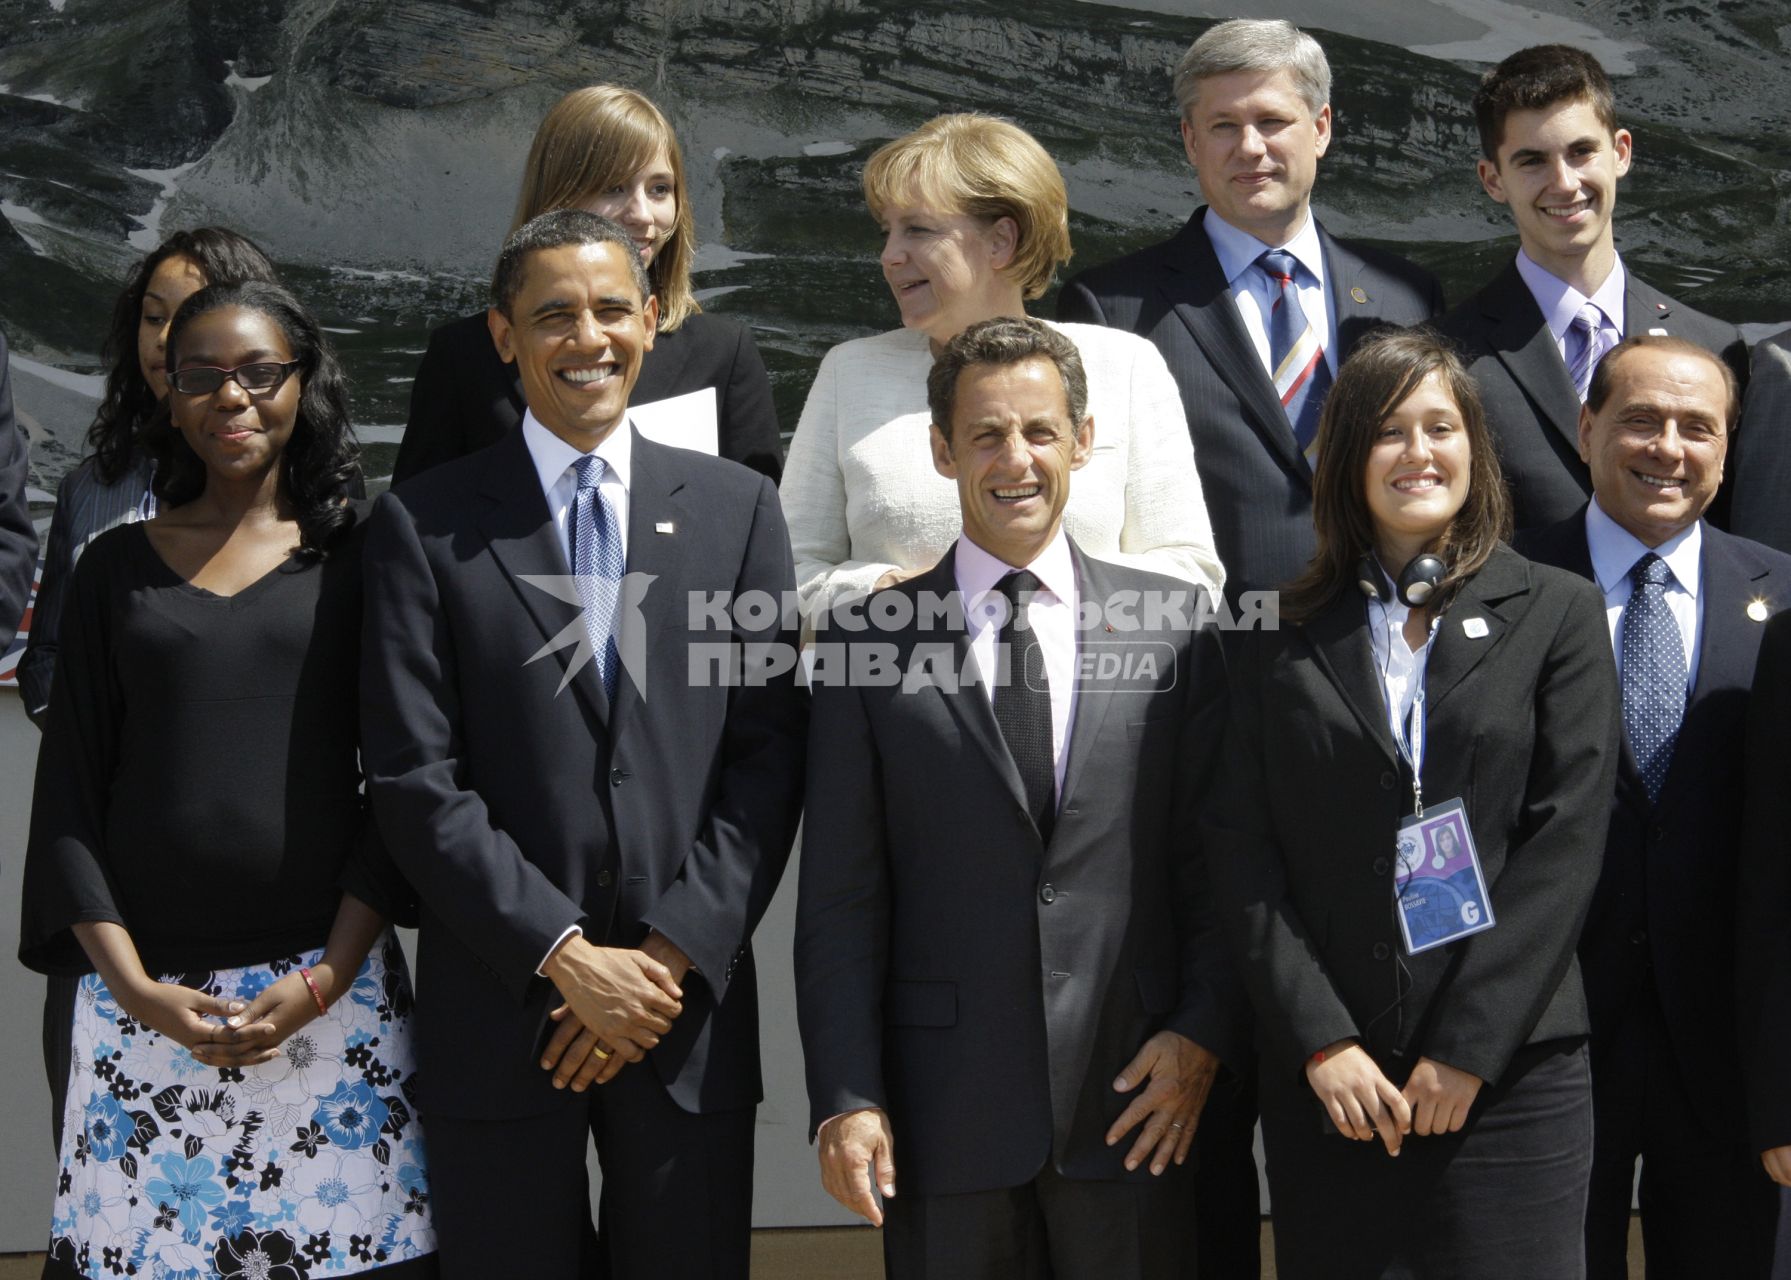 Рабочее заседание глав государств и правительств Группы восьми с участием представителей Бразилии, Египта, Индии, Китая, Мексики и ЮАР. Барак Обама и Николя Саркози.